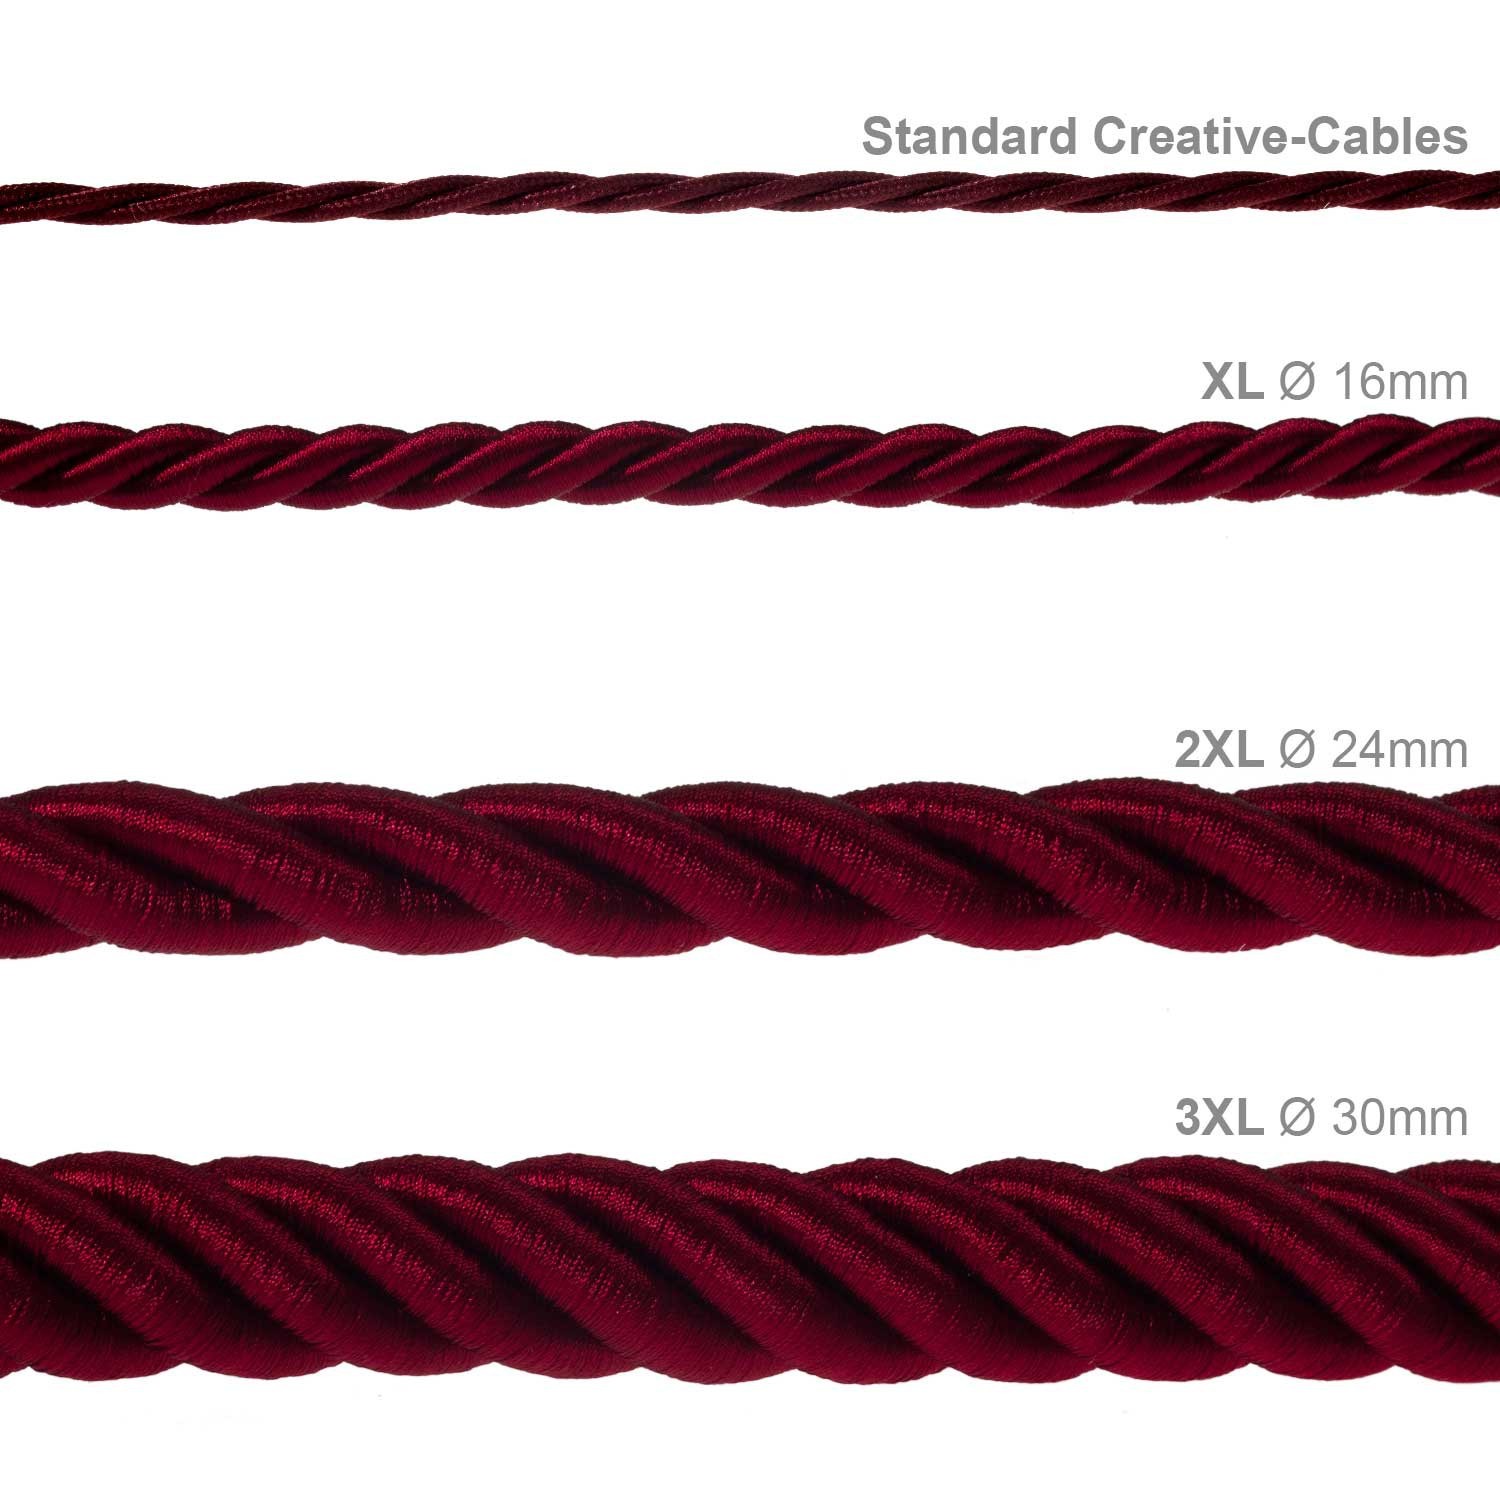 3XL električna vrv, električen kabel 3x0,75, prekrit s temno bordo svetlečim blagom. Premer 30mm.